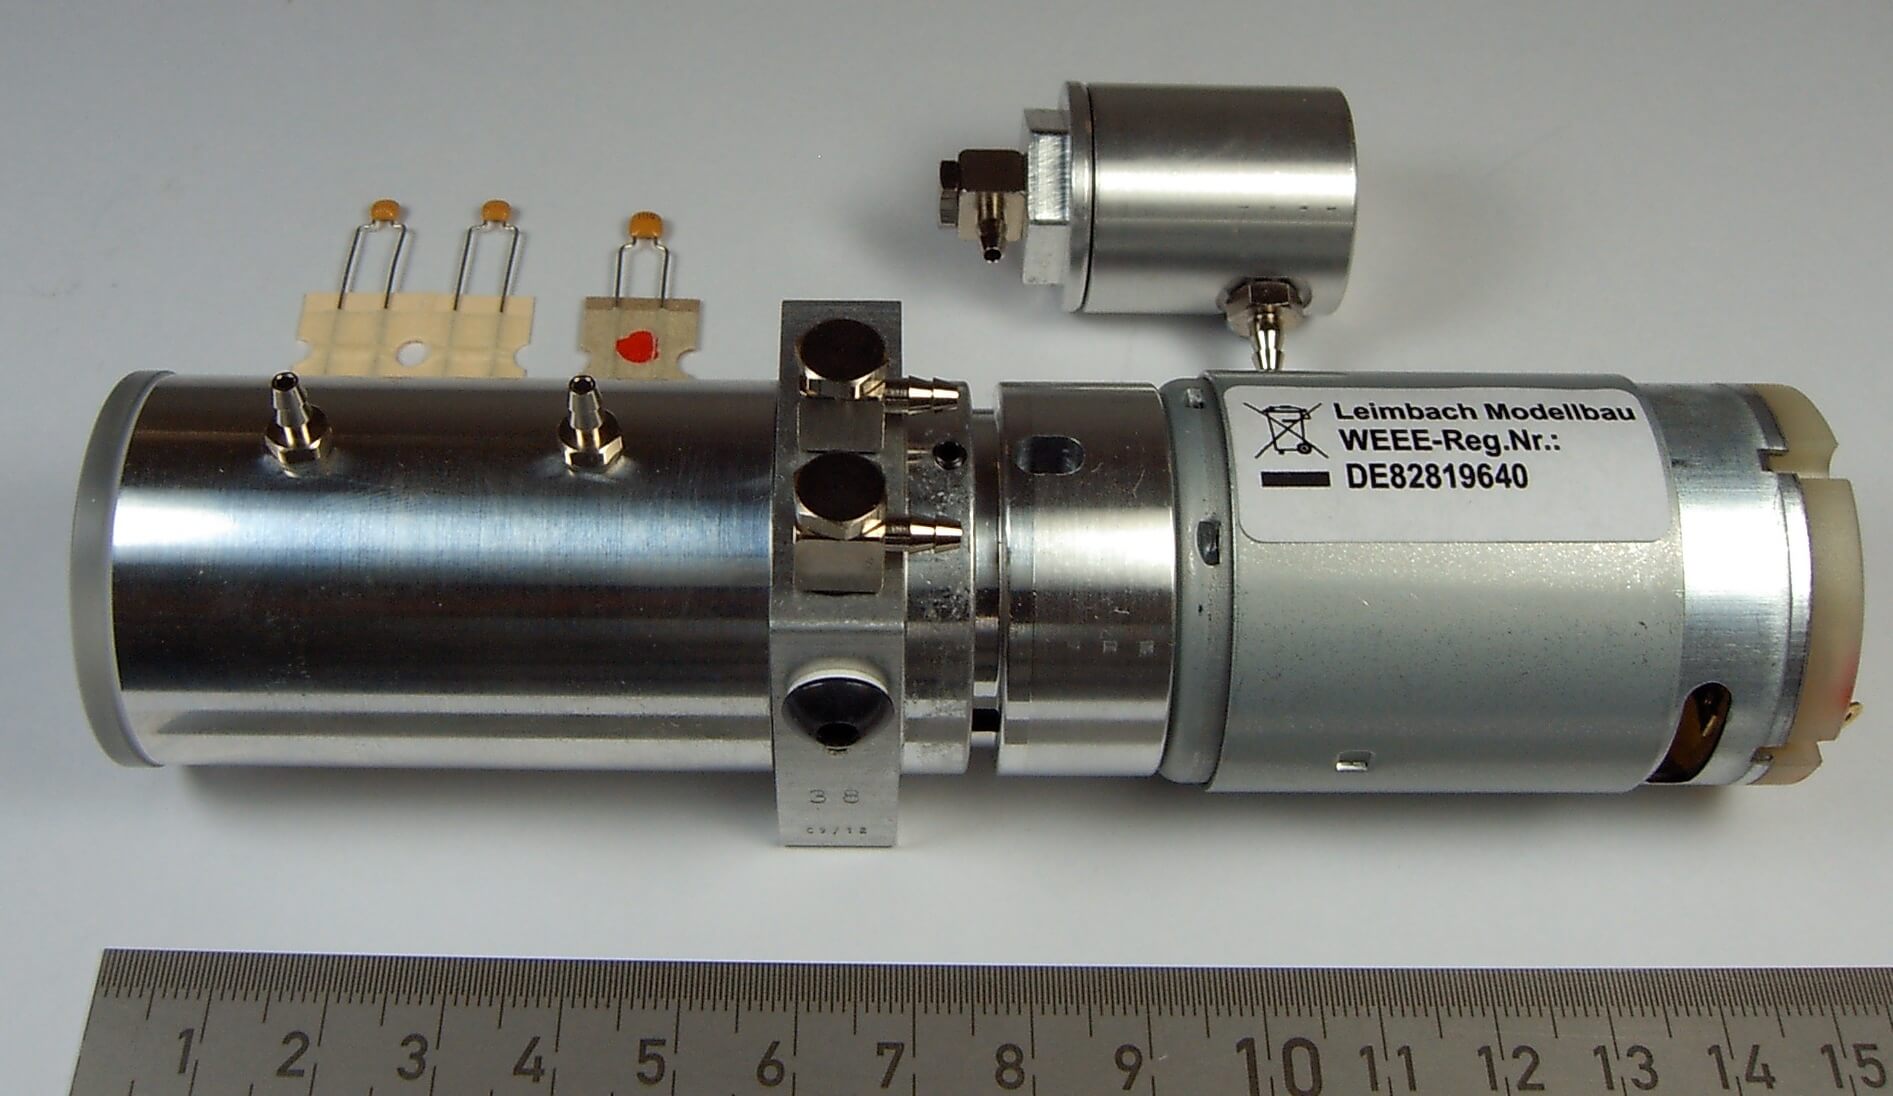 1 Hydraulik-Pumpe 12 Volt / 200 ml/min. Auf 12 bar, Leimbach-Pumpen, Hydraulik, Fahrzeug-Komponenten